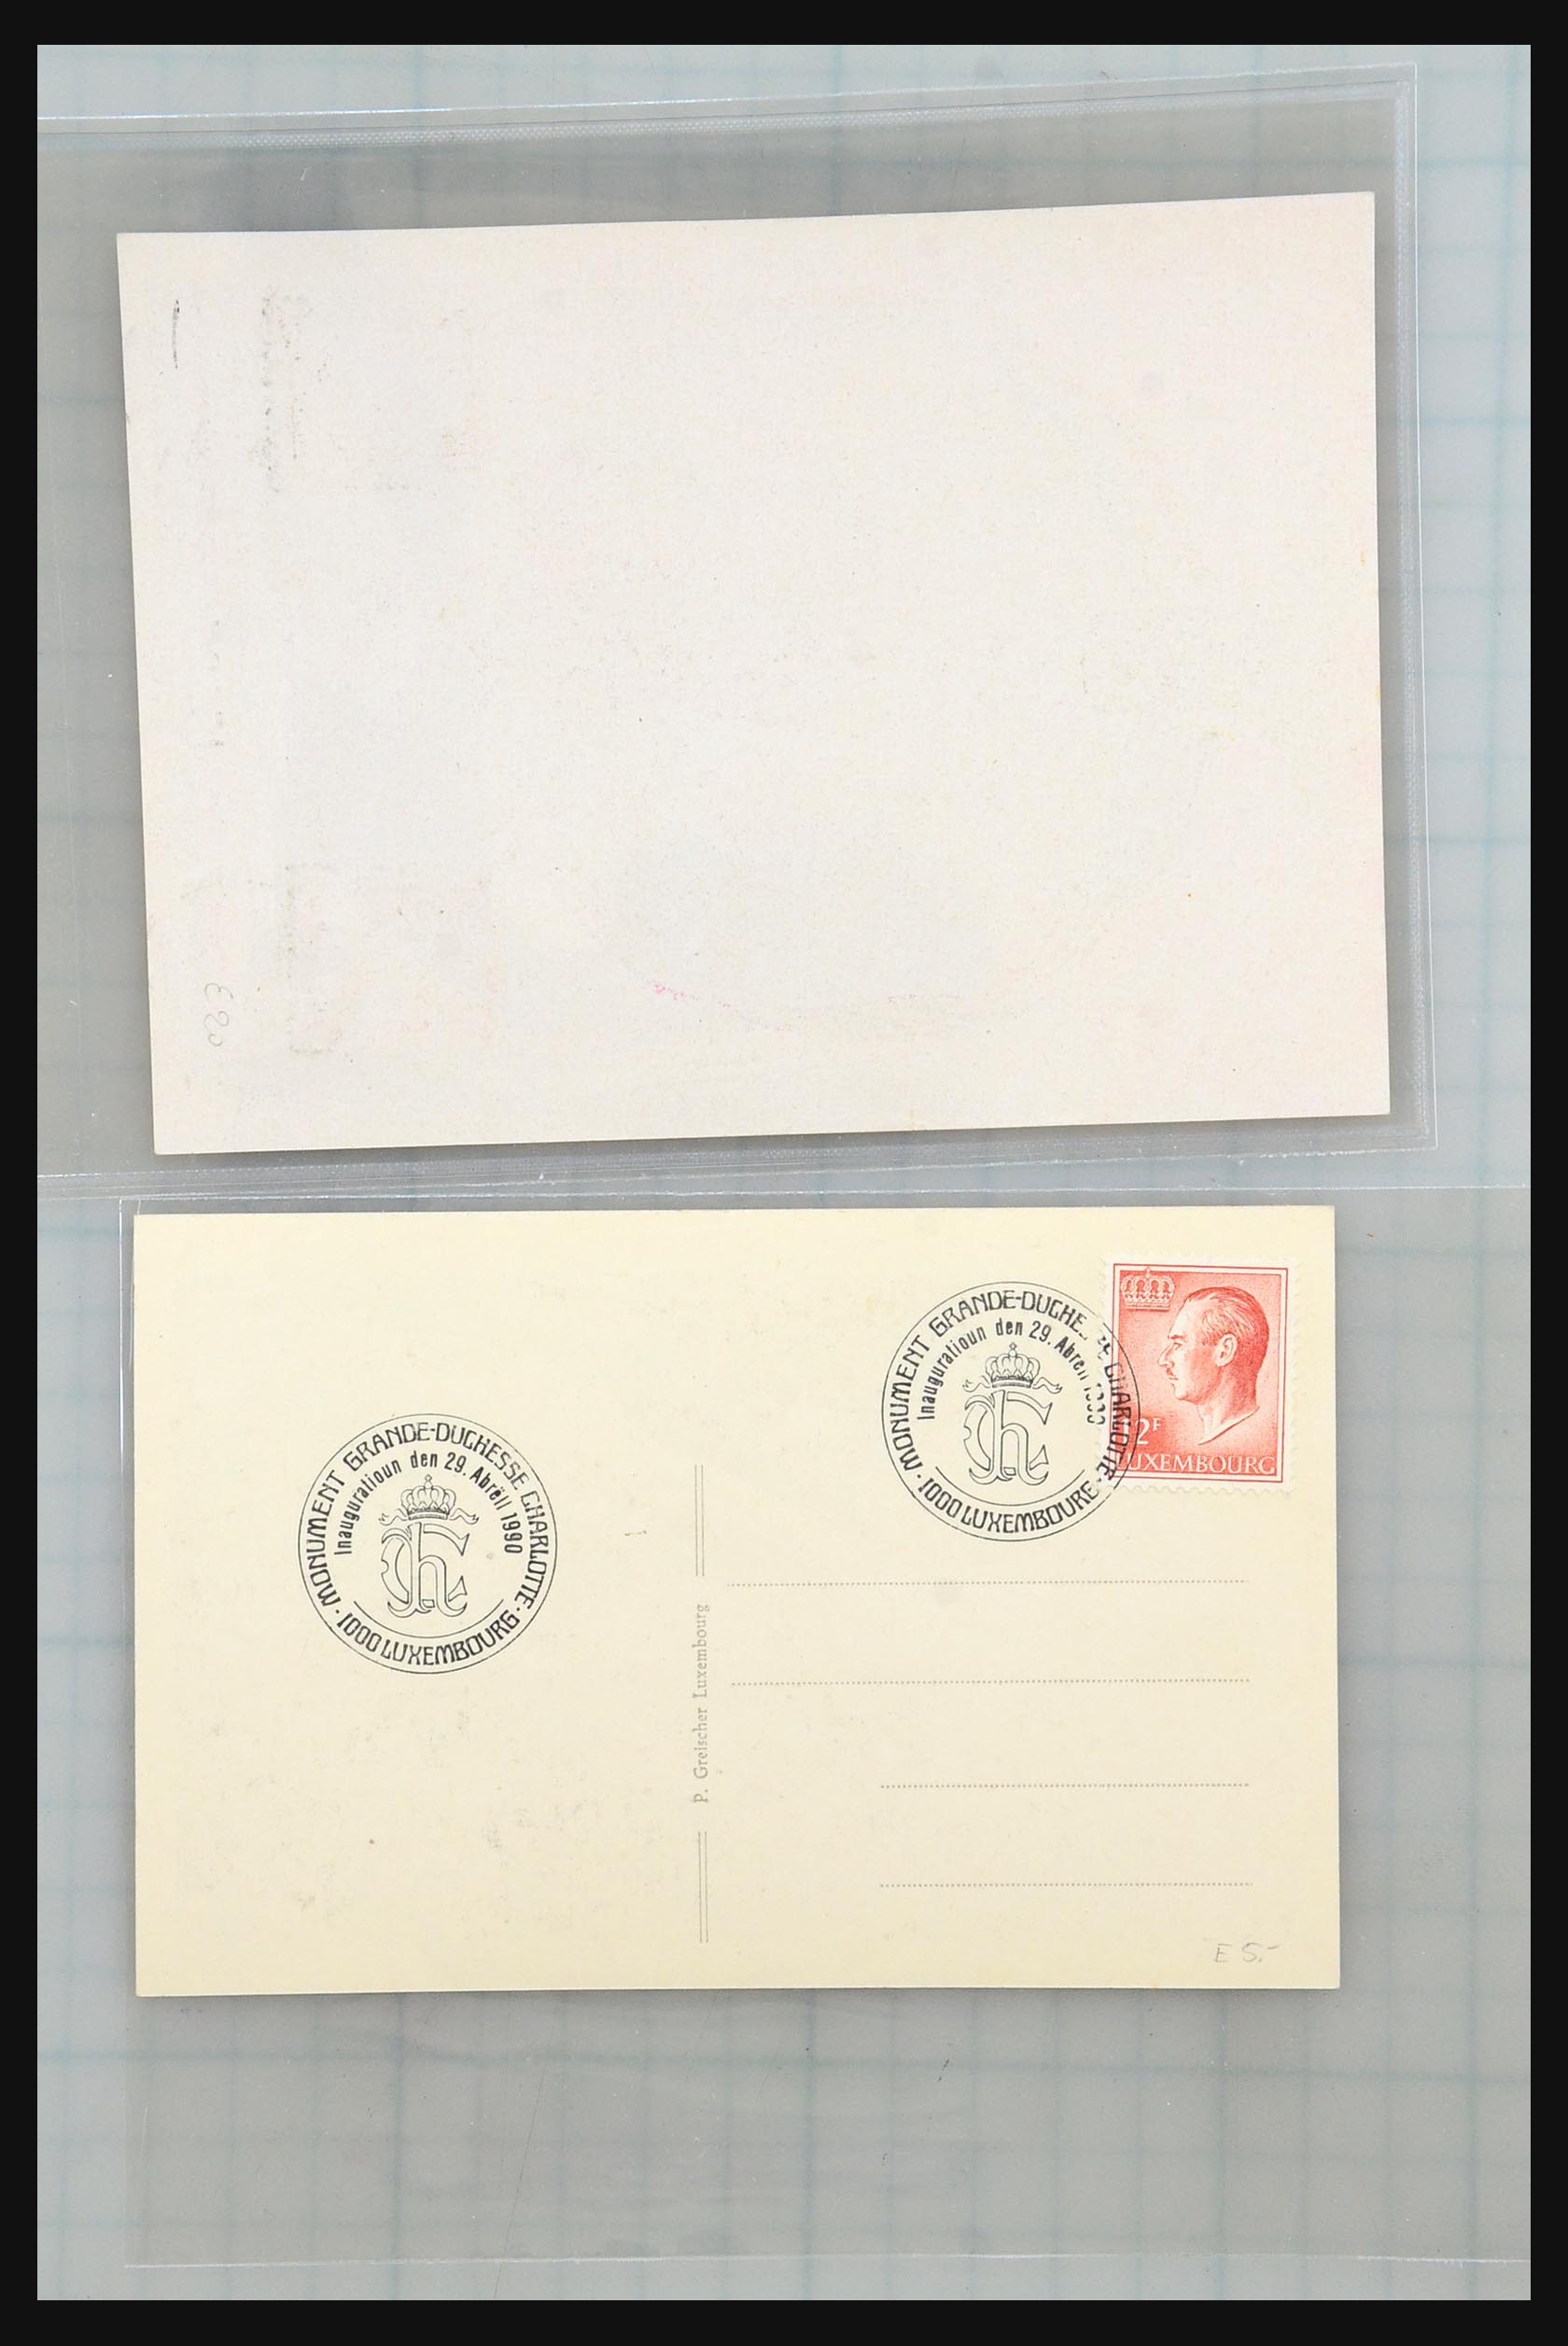 31358 009 - 31358 Portugal/Luxemburg/Griekenland brieven 1880-1960.